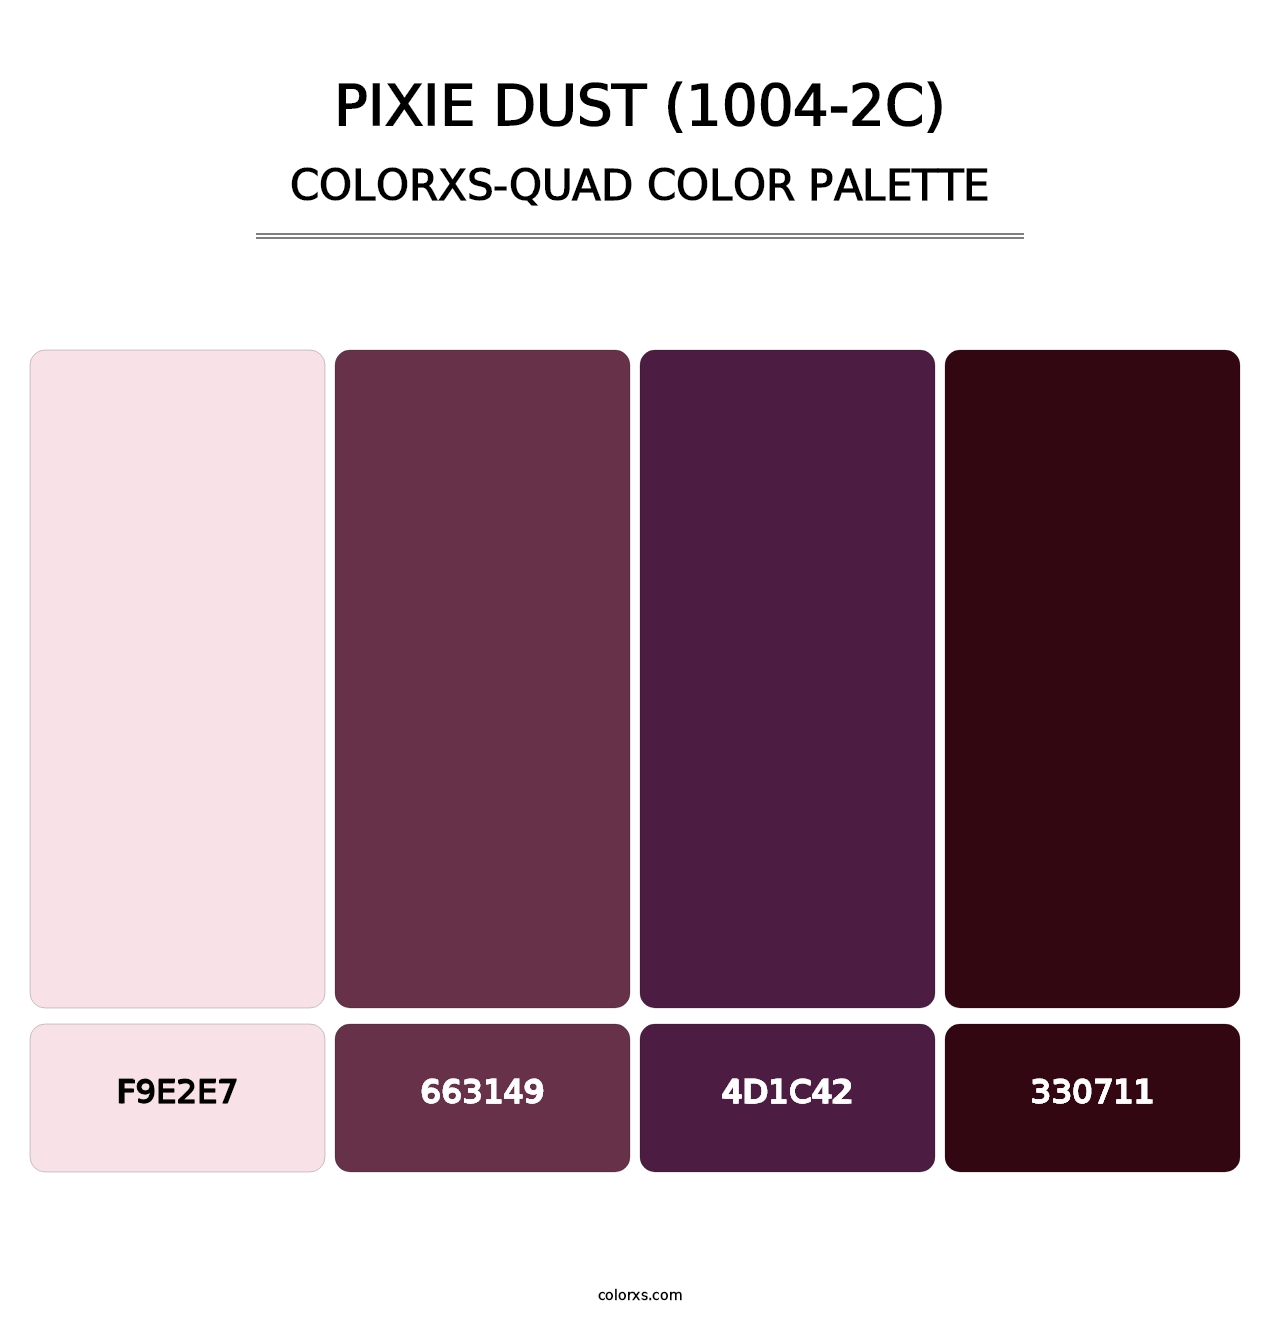 Pixie Dust (1004-2C) - Colorxs Quad Palette